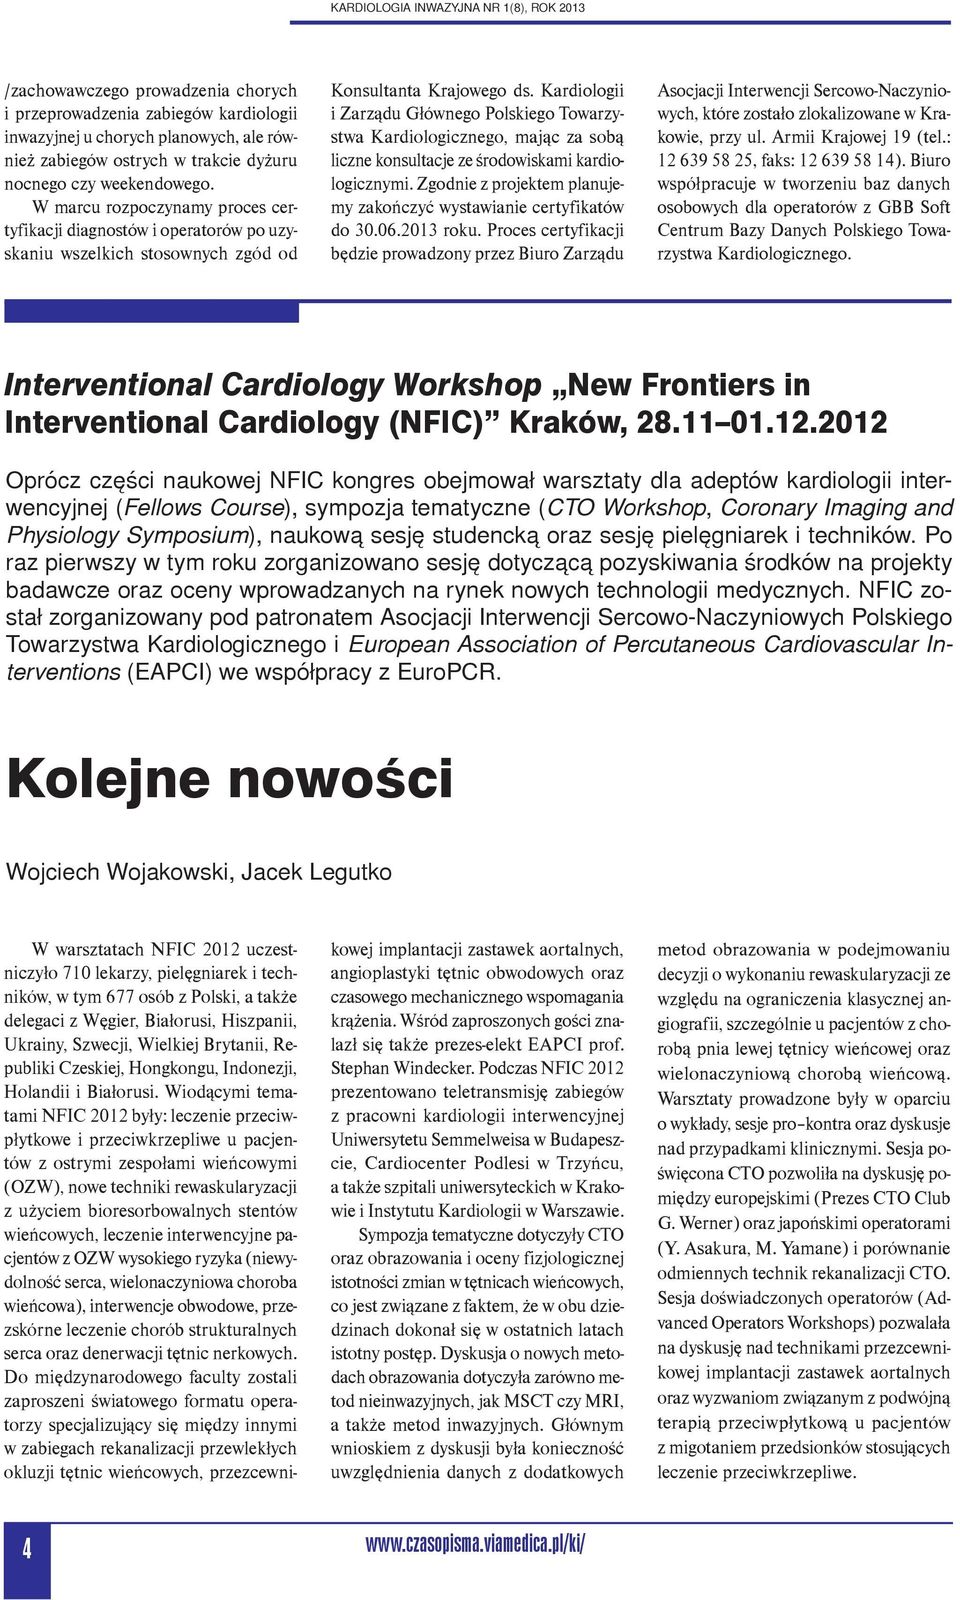 Kardiologii i Zarządu Głównego Polskiego Towarzystwa Kardiologicznego, mając za sobą liczne konsultacje ze środowiskami kardiologicznymi.